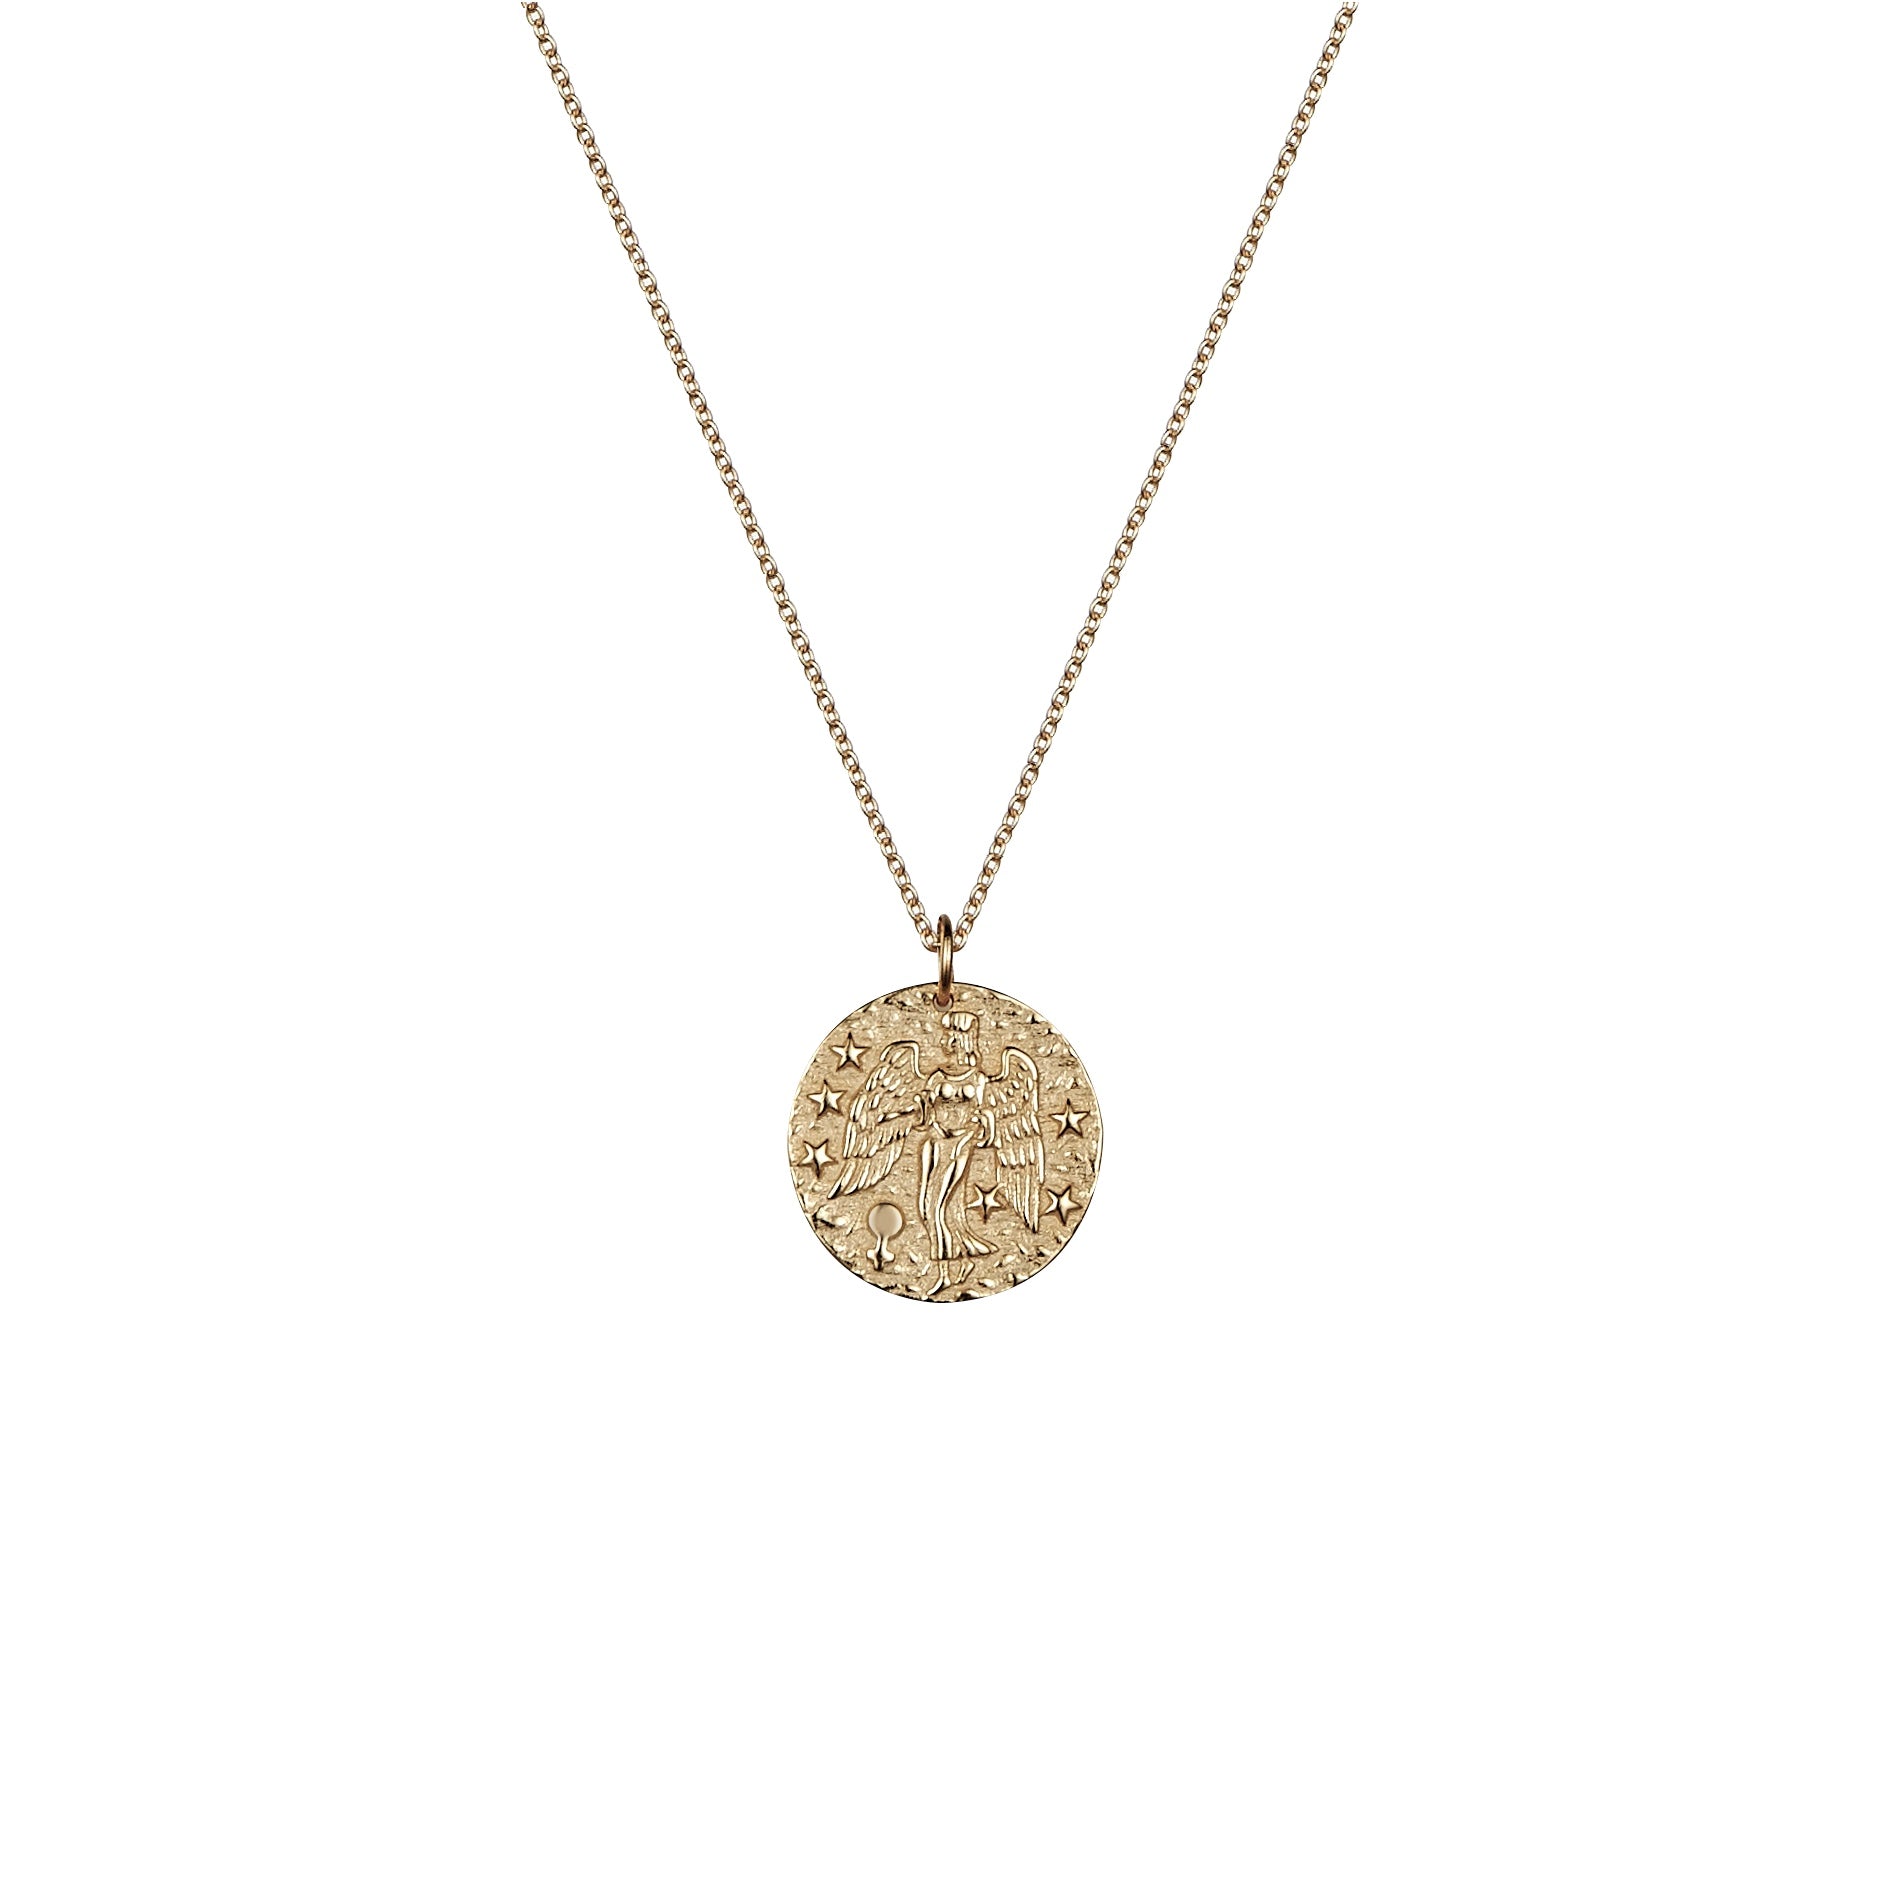 Virgo rose gold necklace 